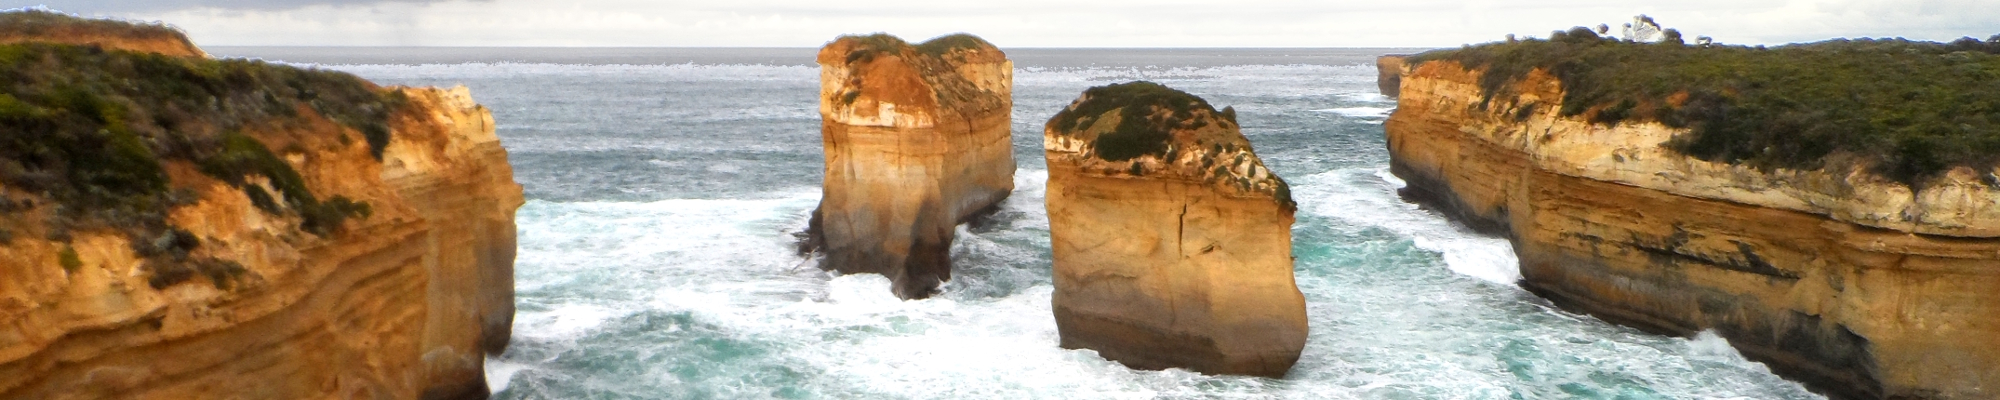 great ocean road rock pillars